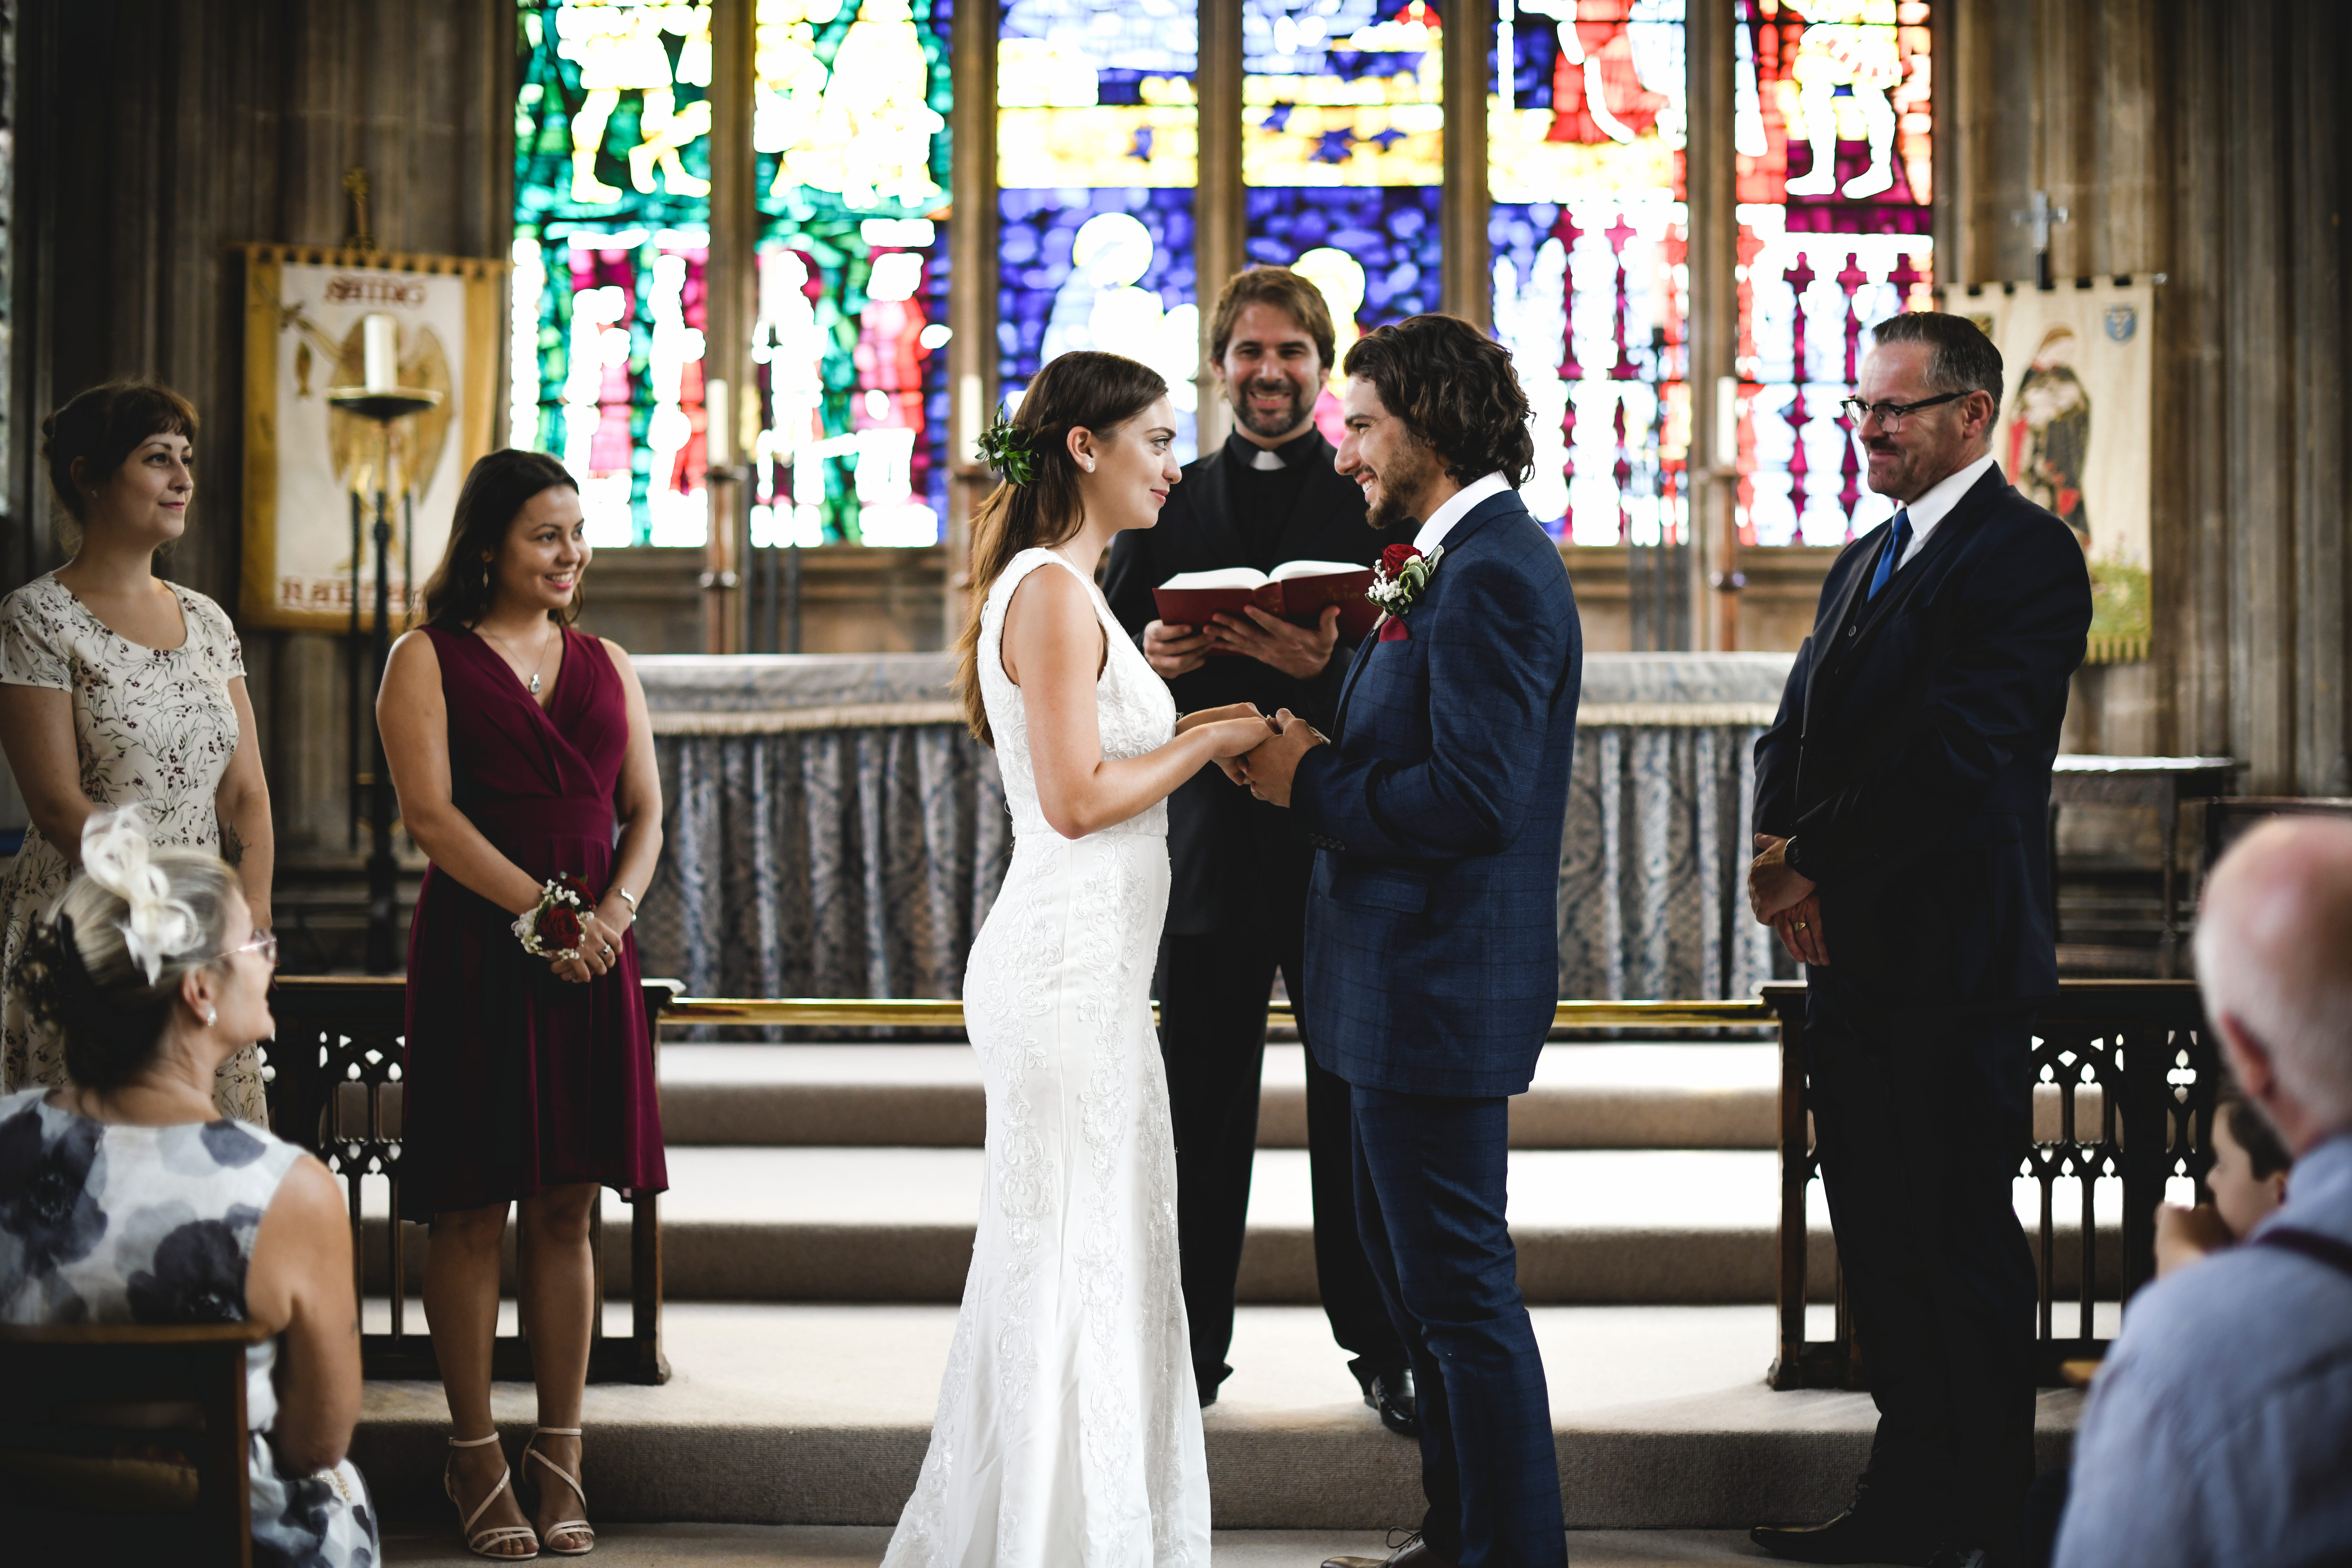 Braut und Bräutigam vor dem Altar | Quelle: Shutterstock